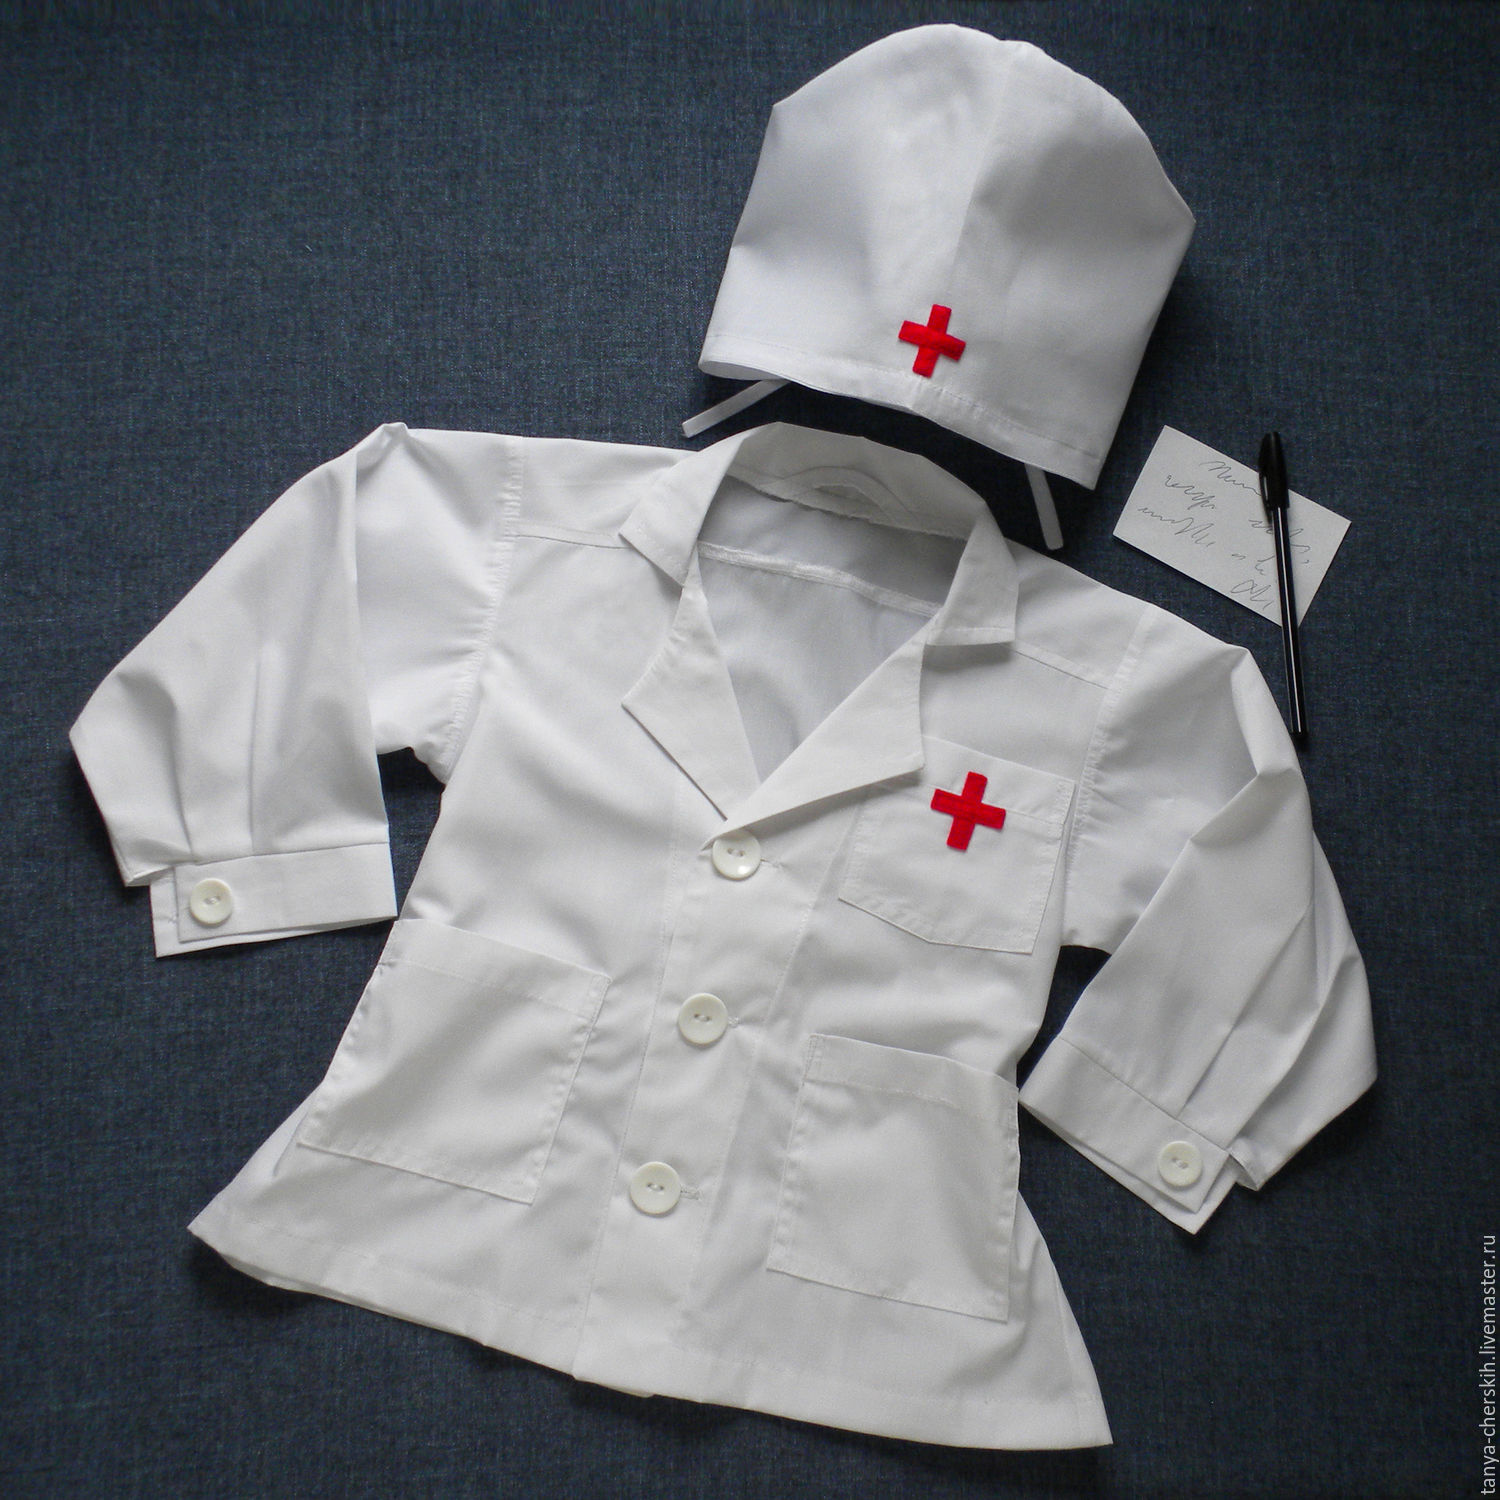 Медицинские халаты для детей